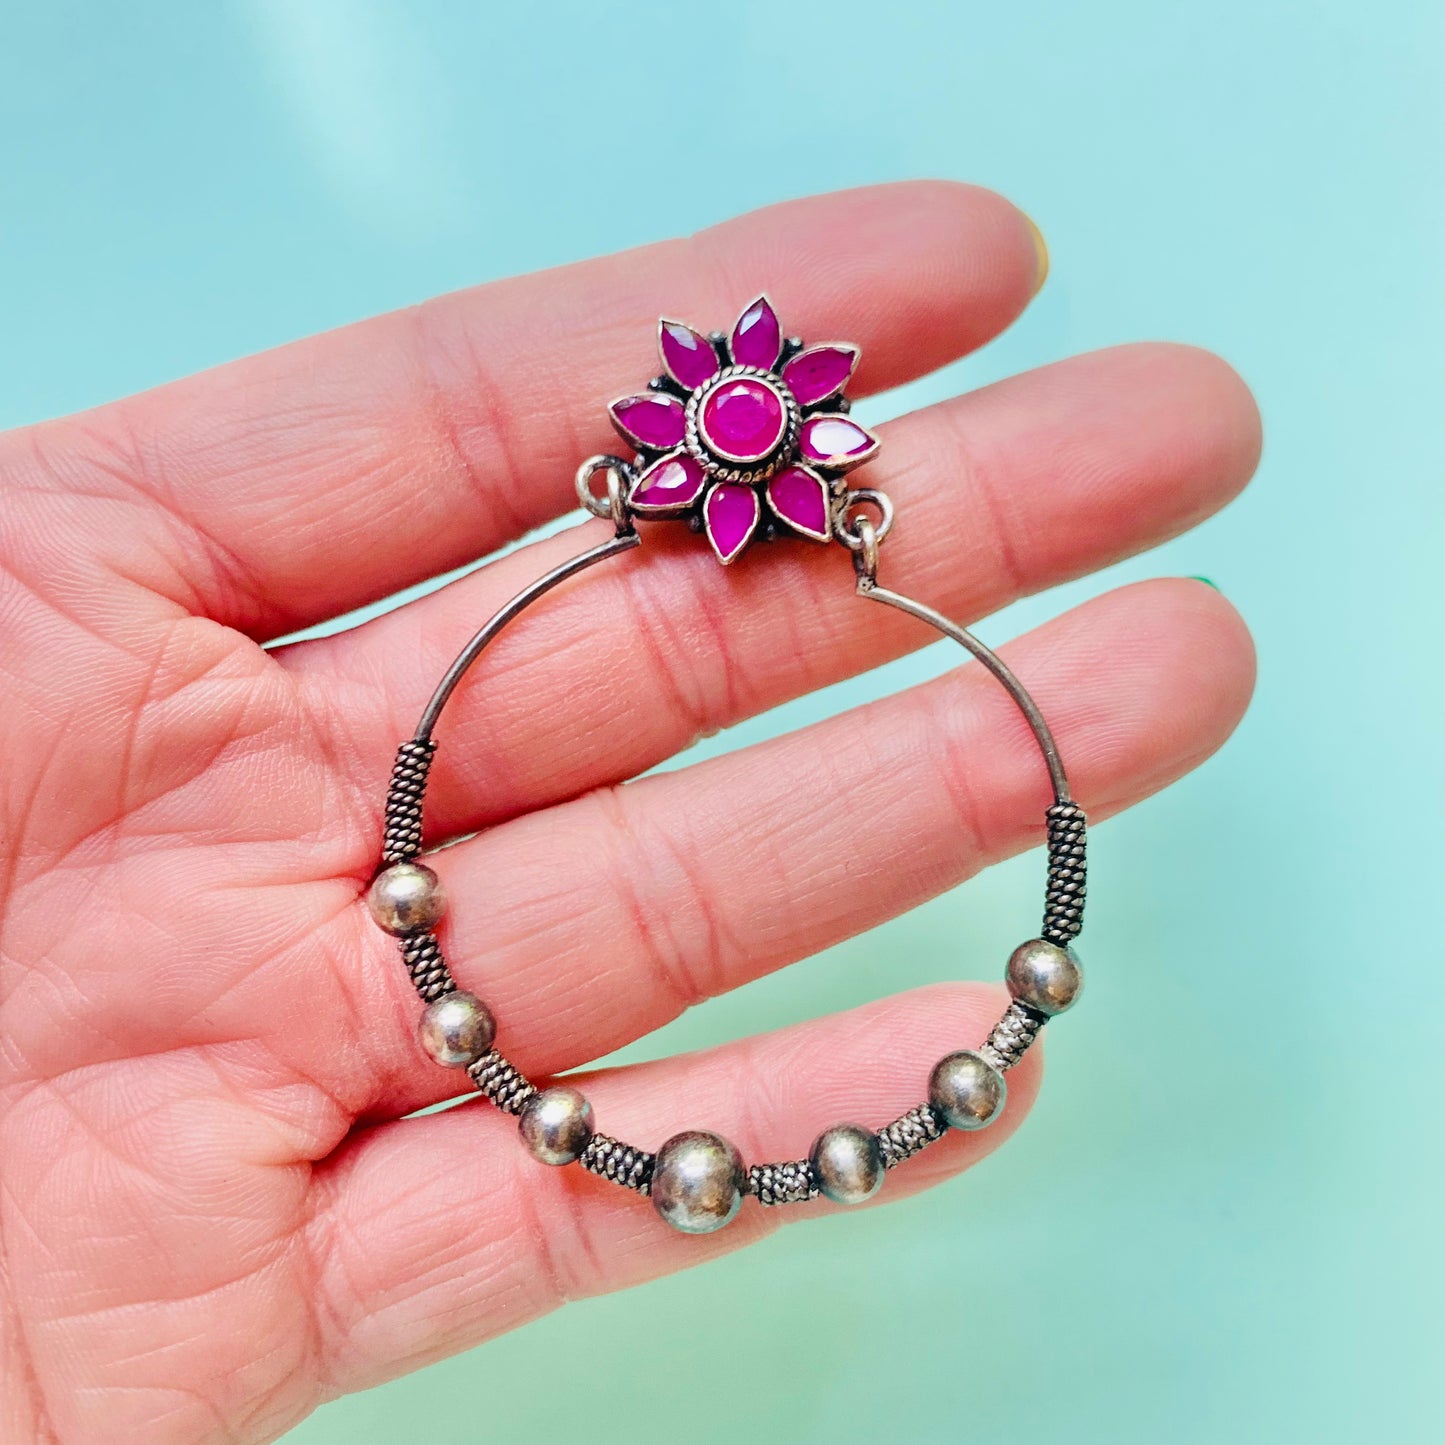 Vintage silver hoop earrings with pink agate flower studs